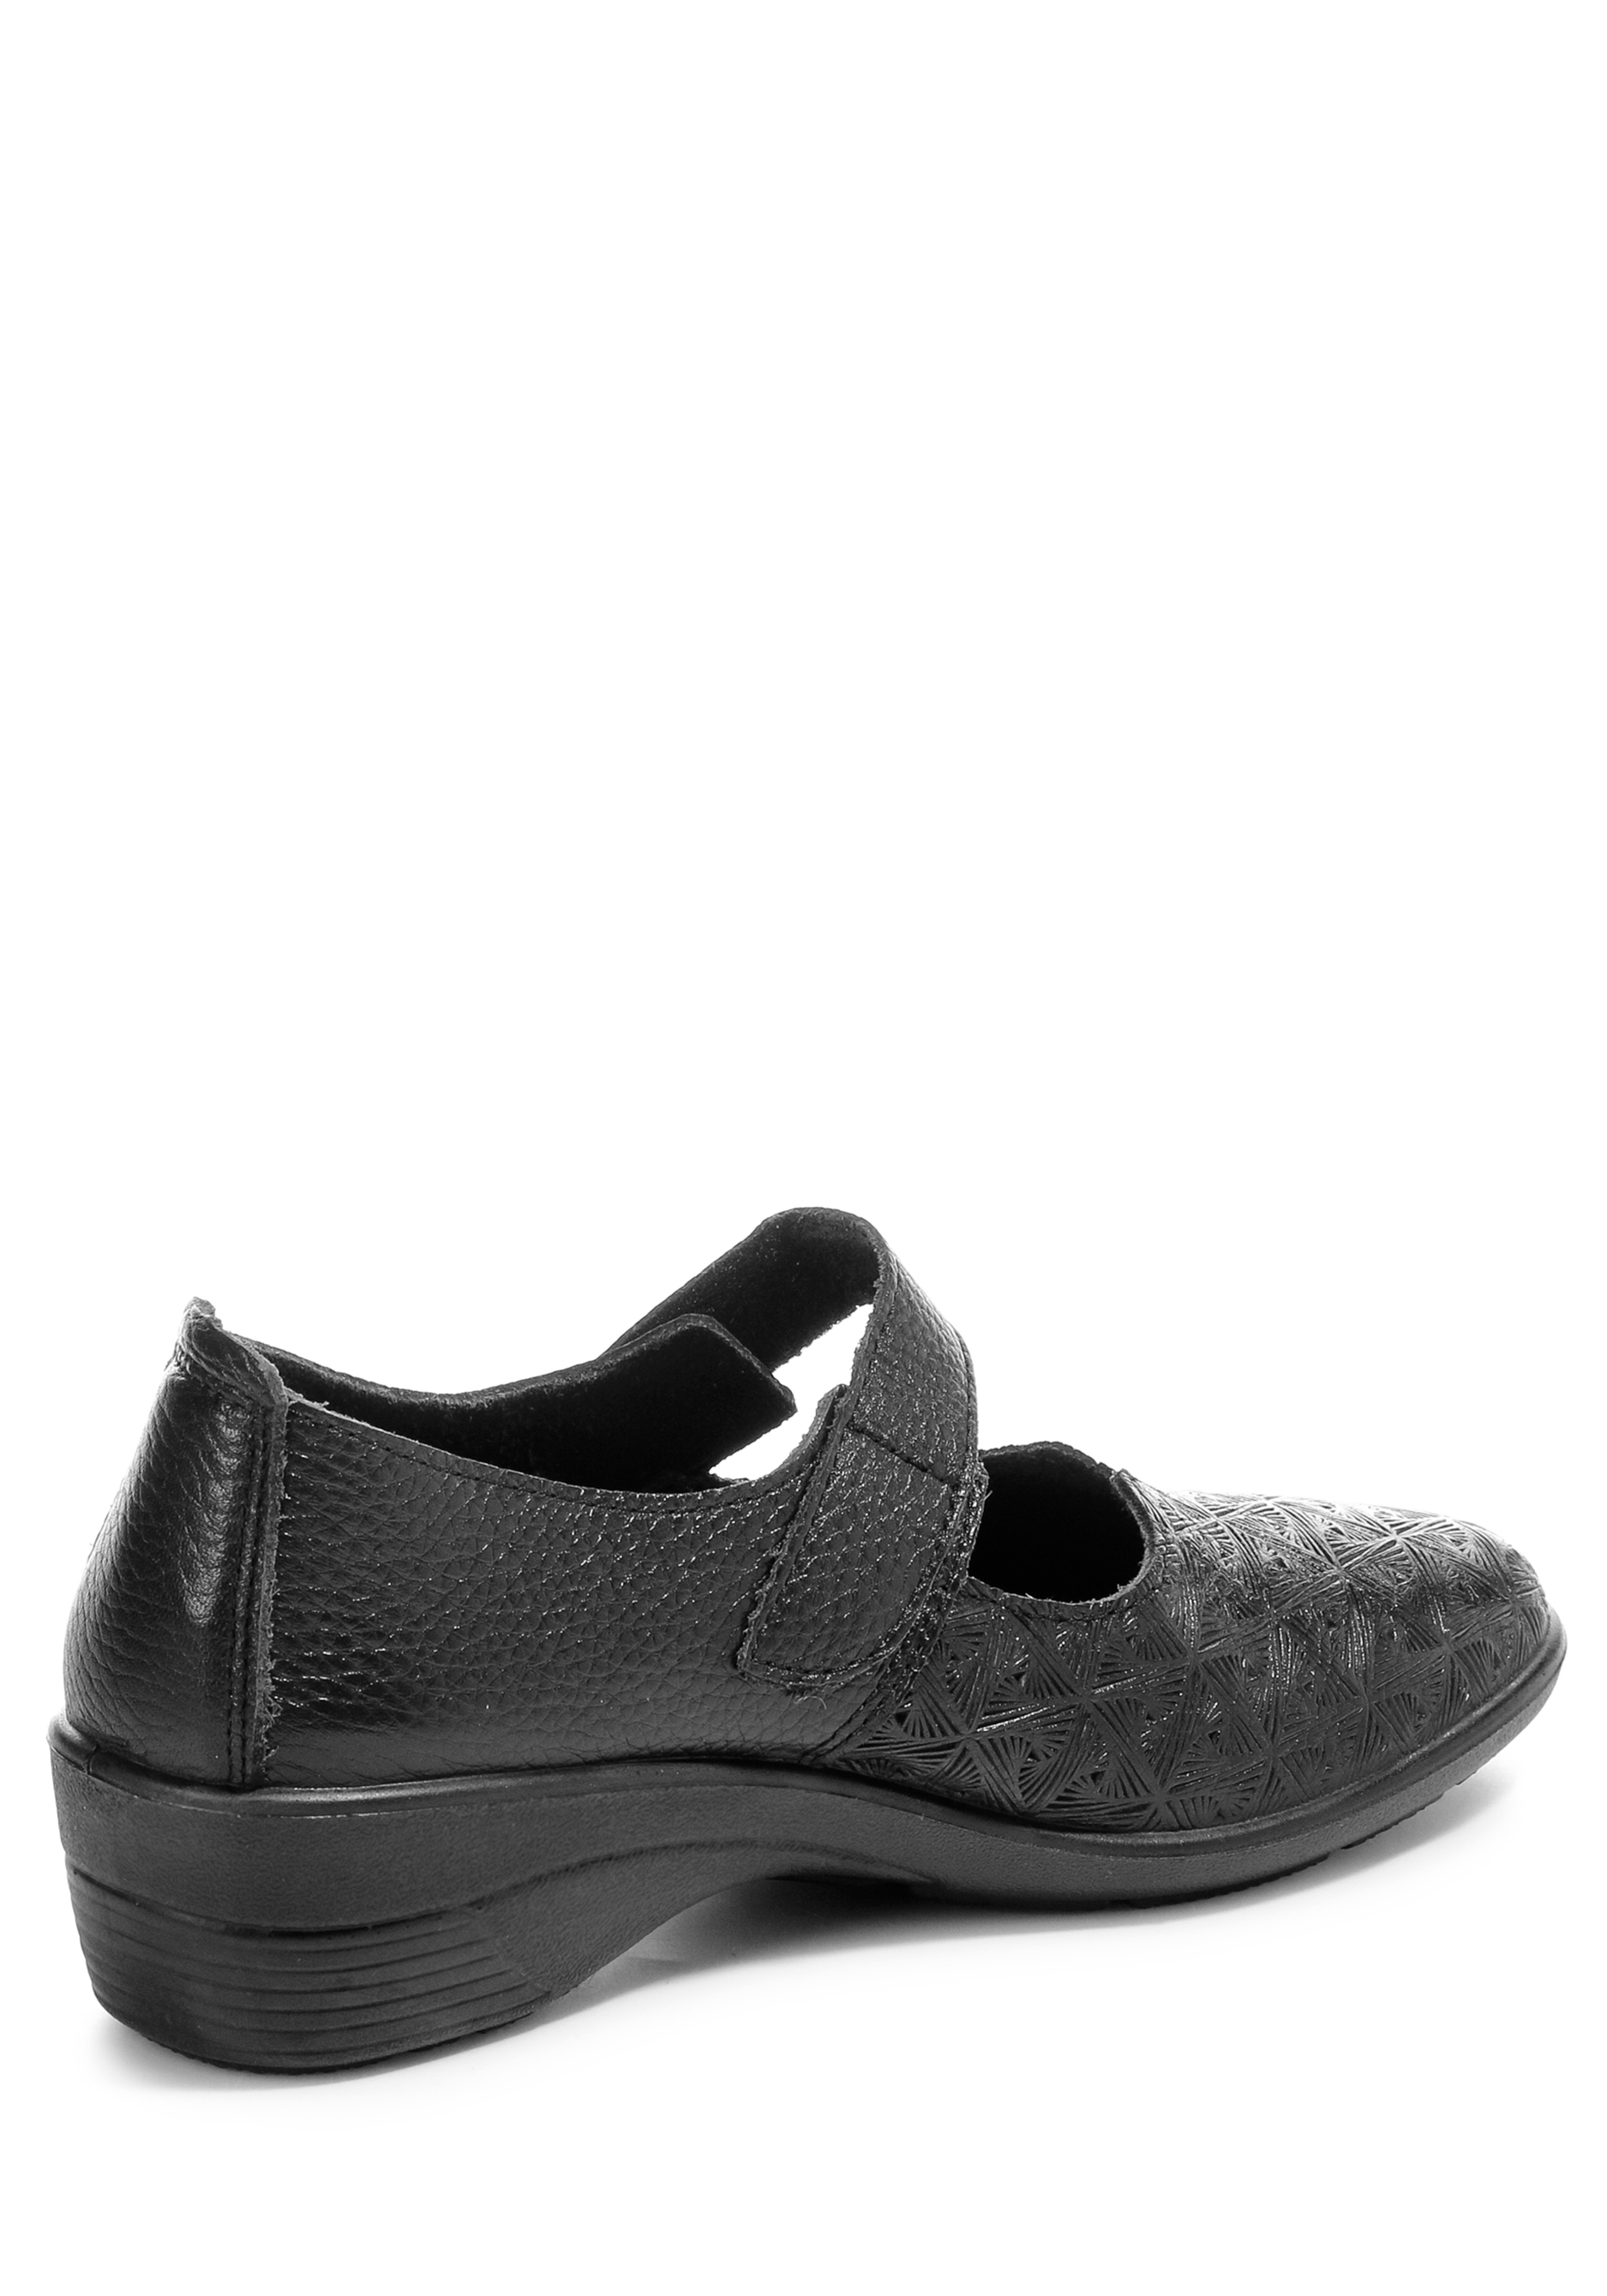 Туфли женские "Русана" Almi, размер 39, цвет черный - фото 3